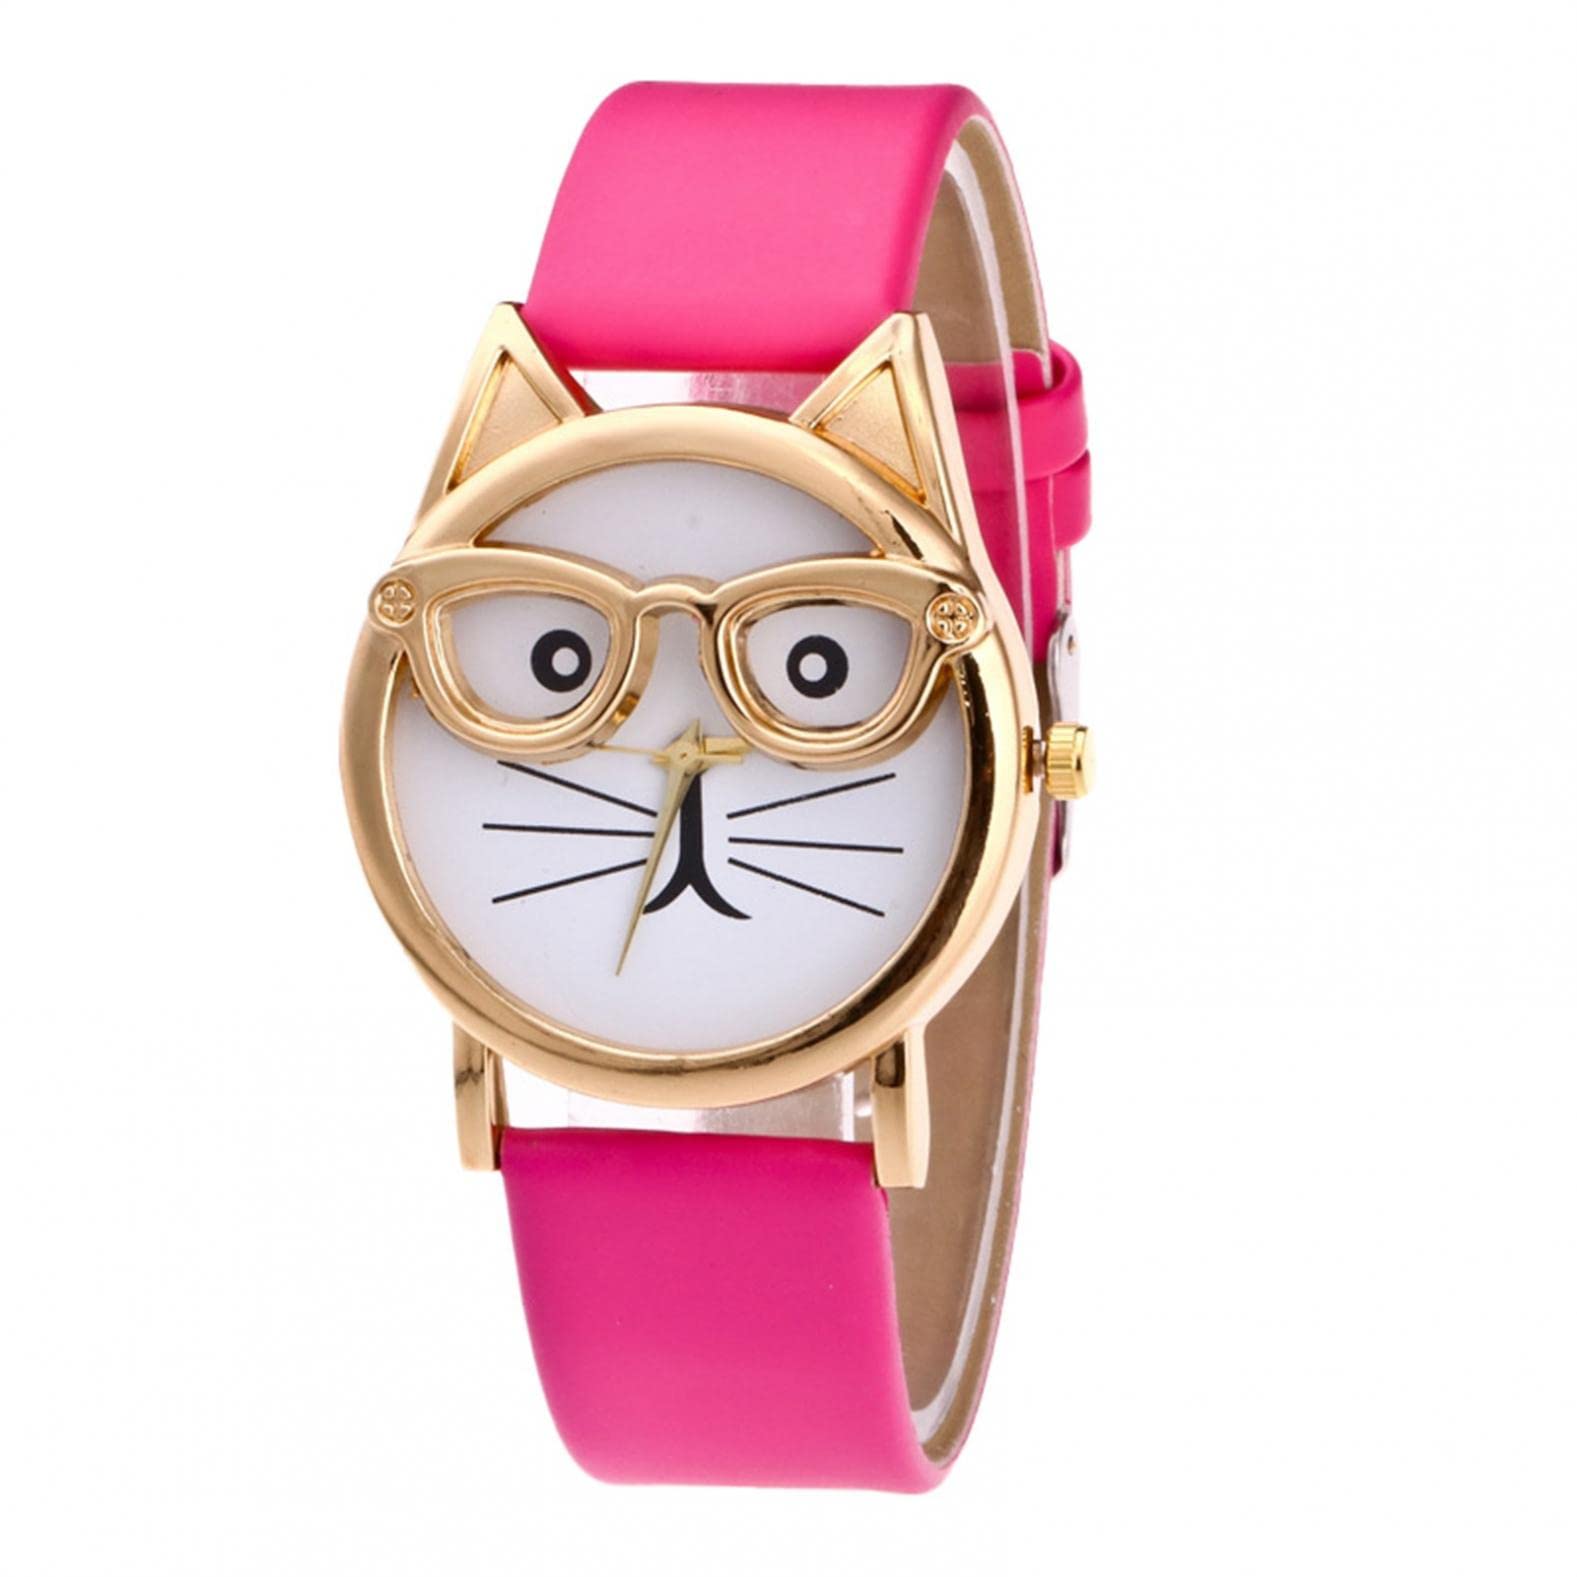 Ainiyo Uhr Damen Katzen Brille Zifferblatt Luxus Armbanduhr Damenuhren Marken Quarzuhr Watch Geschenk für Frauen Damen Frau Mama Teenager Mädchen Beste Freundin Oma Weihnachten